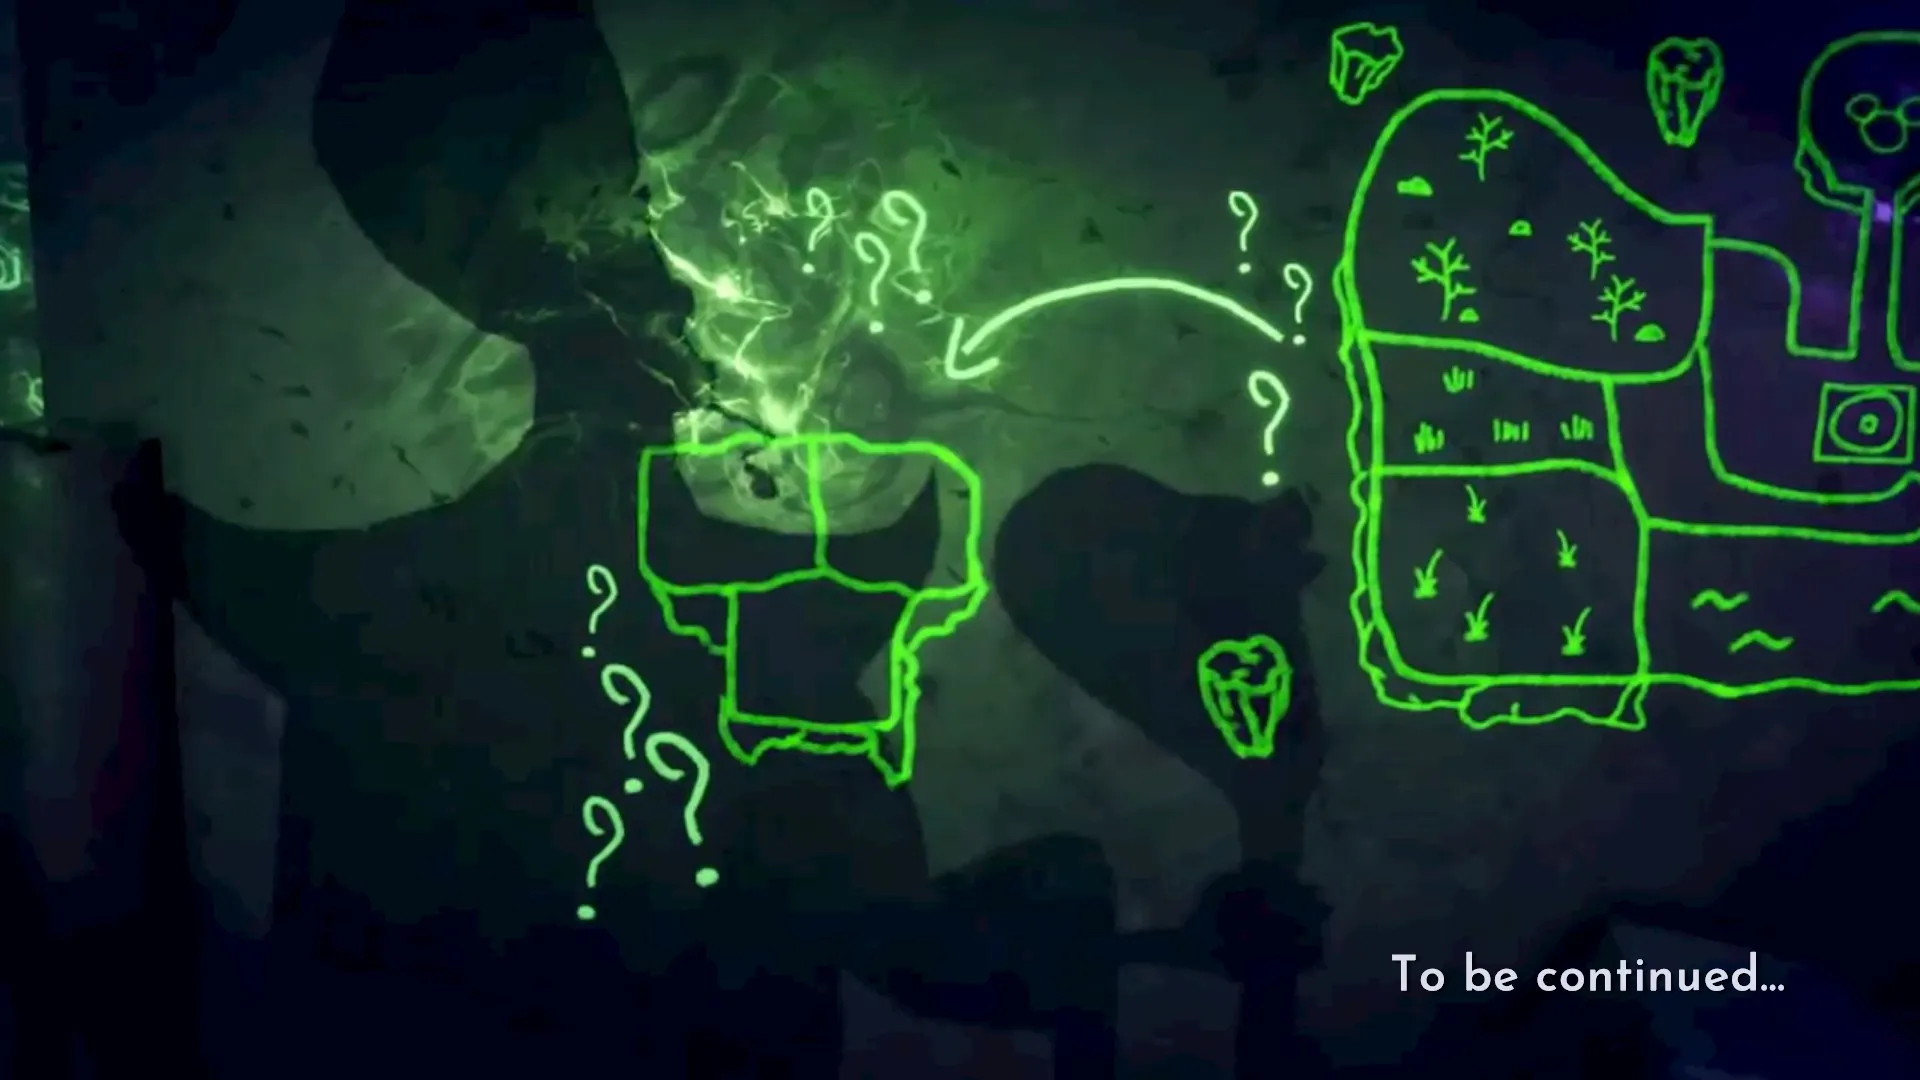 خريطة لوادي Dreamlight المرسوم باللون الأخضر اللامع مع ظل جعفر تلوح في الأفق